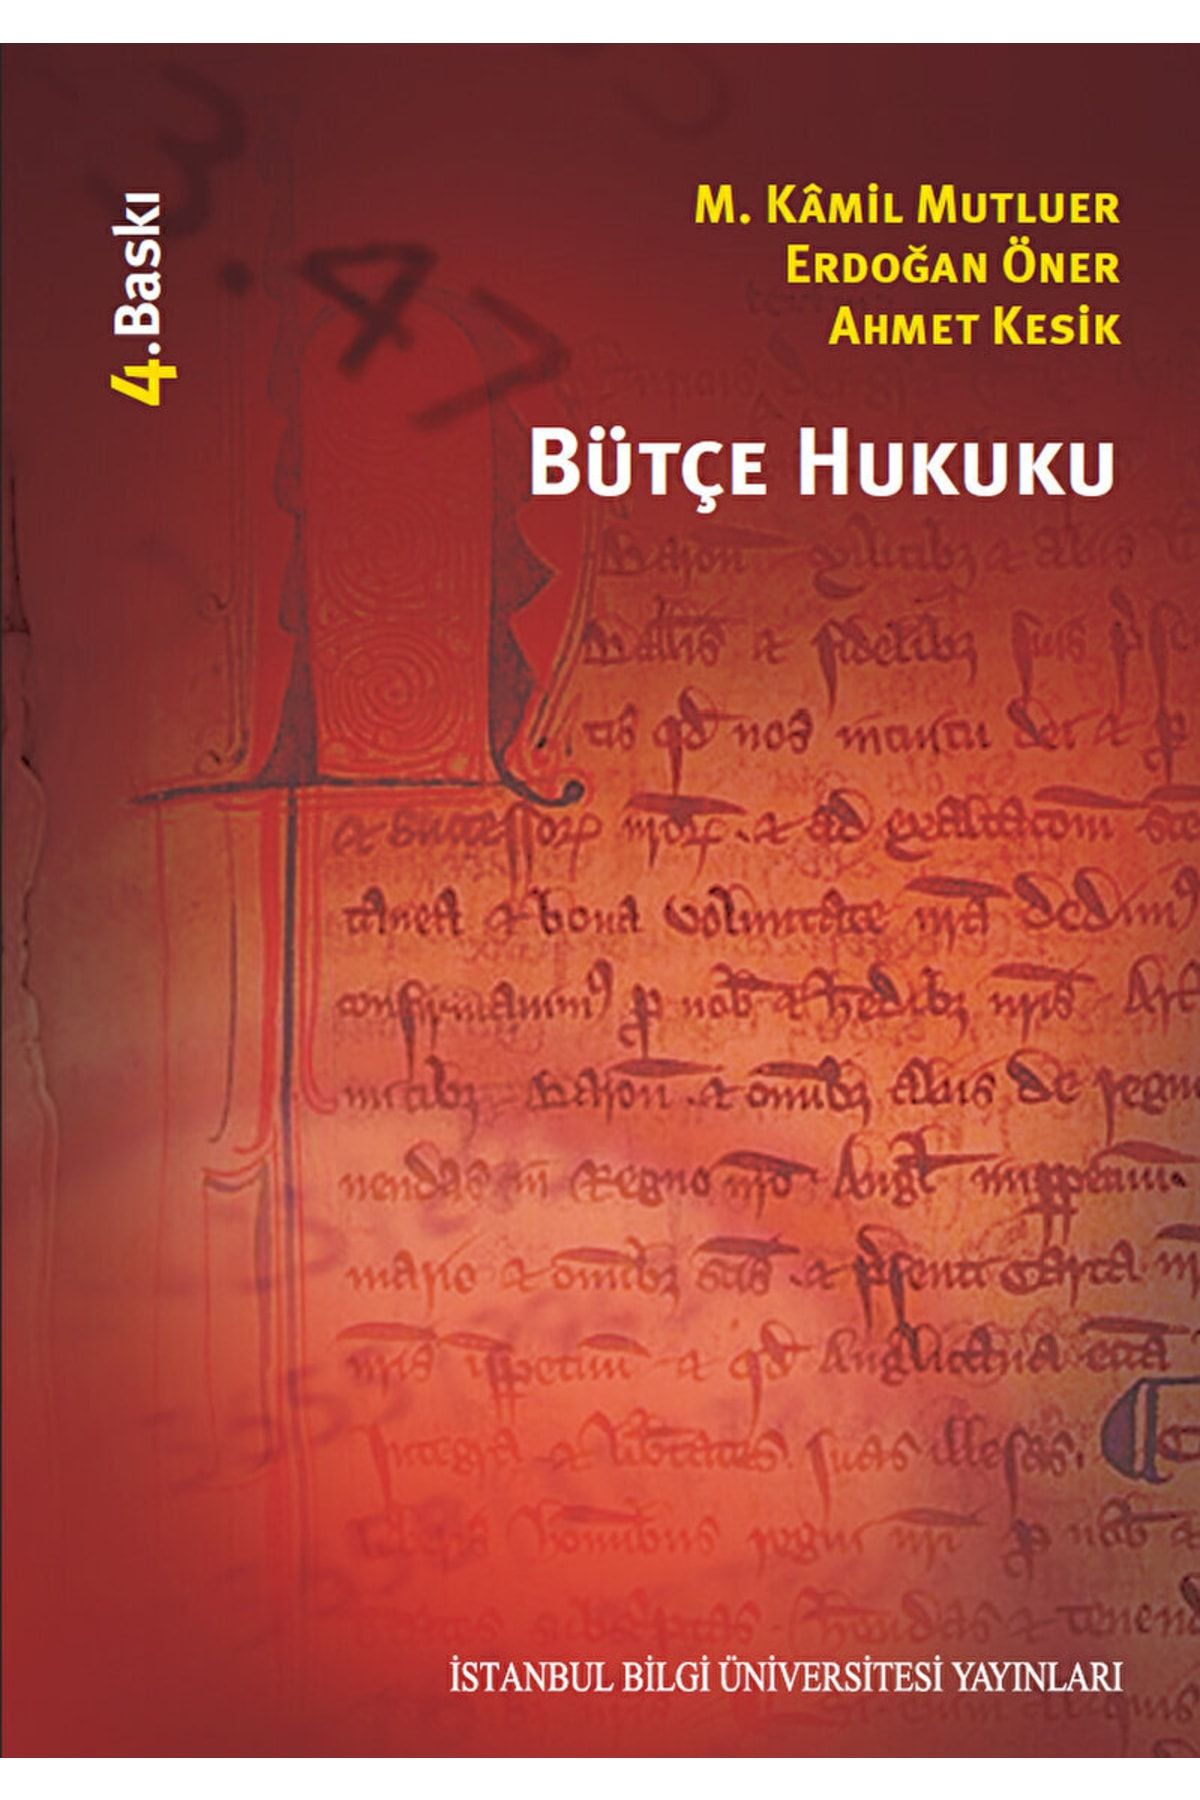 İstanbul Bilgi Üniversitesi Yayınları Bütçe Hukuku / Ahmet Kesik / 3. Baskı